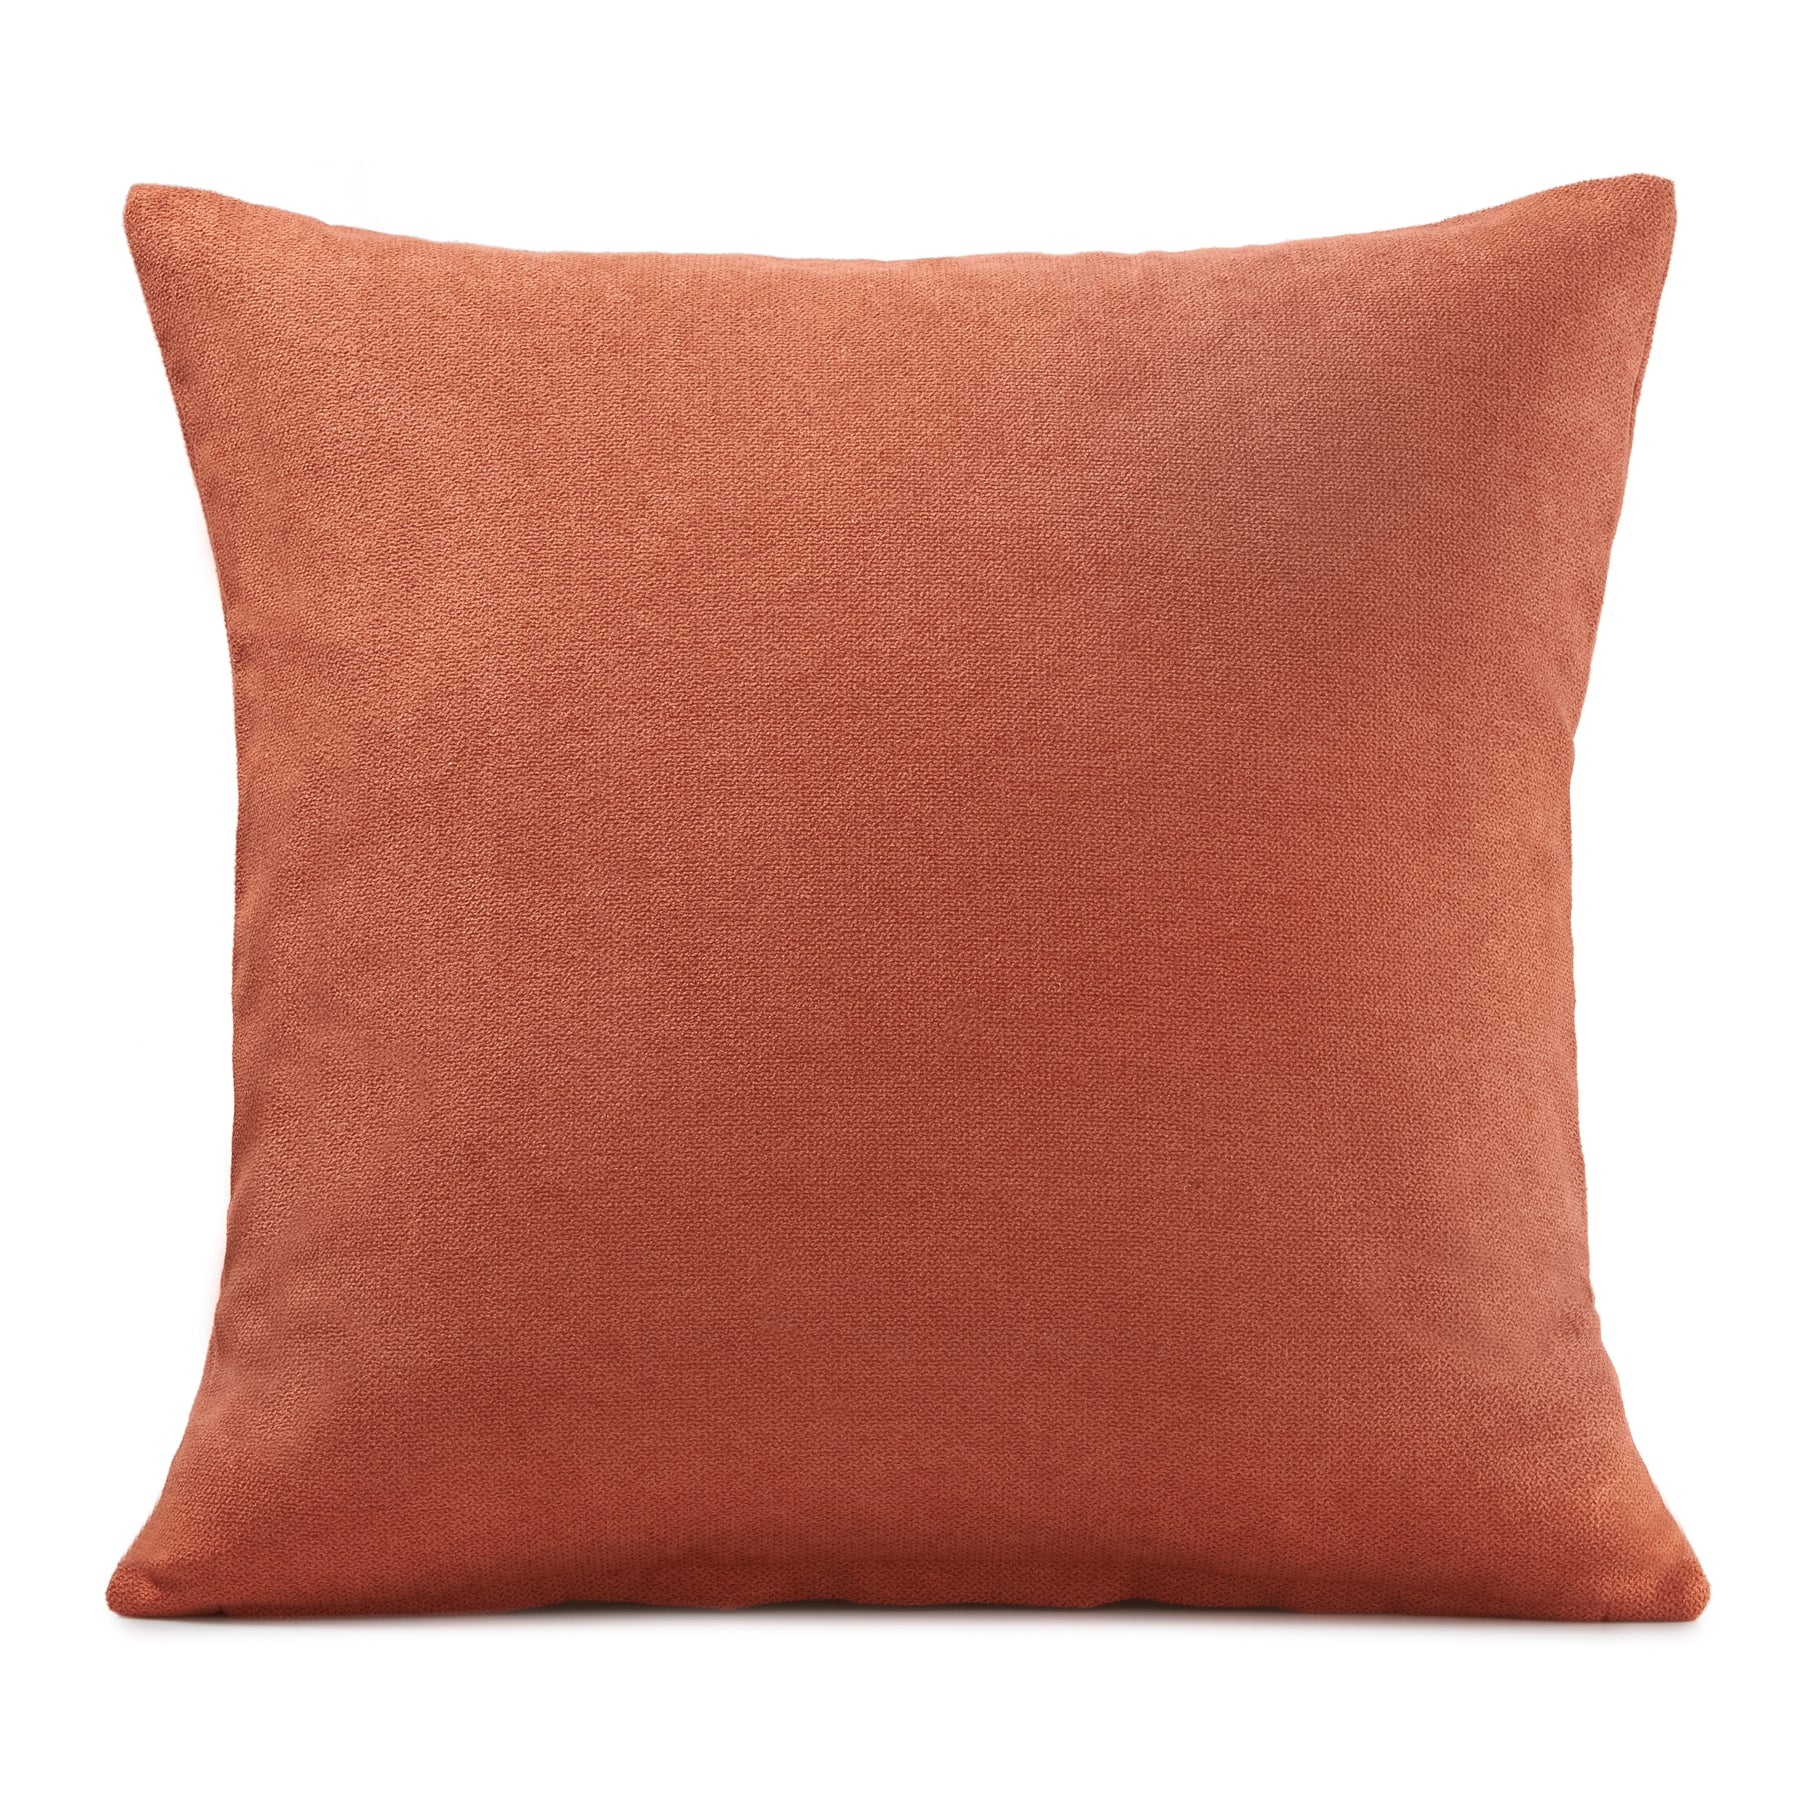 Velvet Chenille Filled Cushion 18x18 Orange